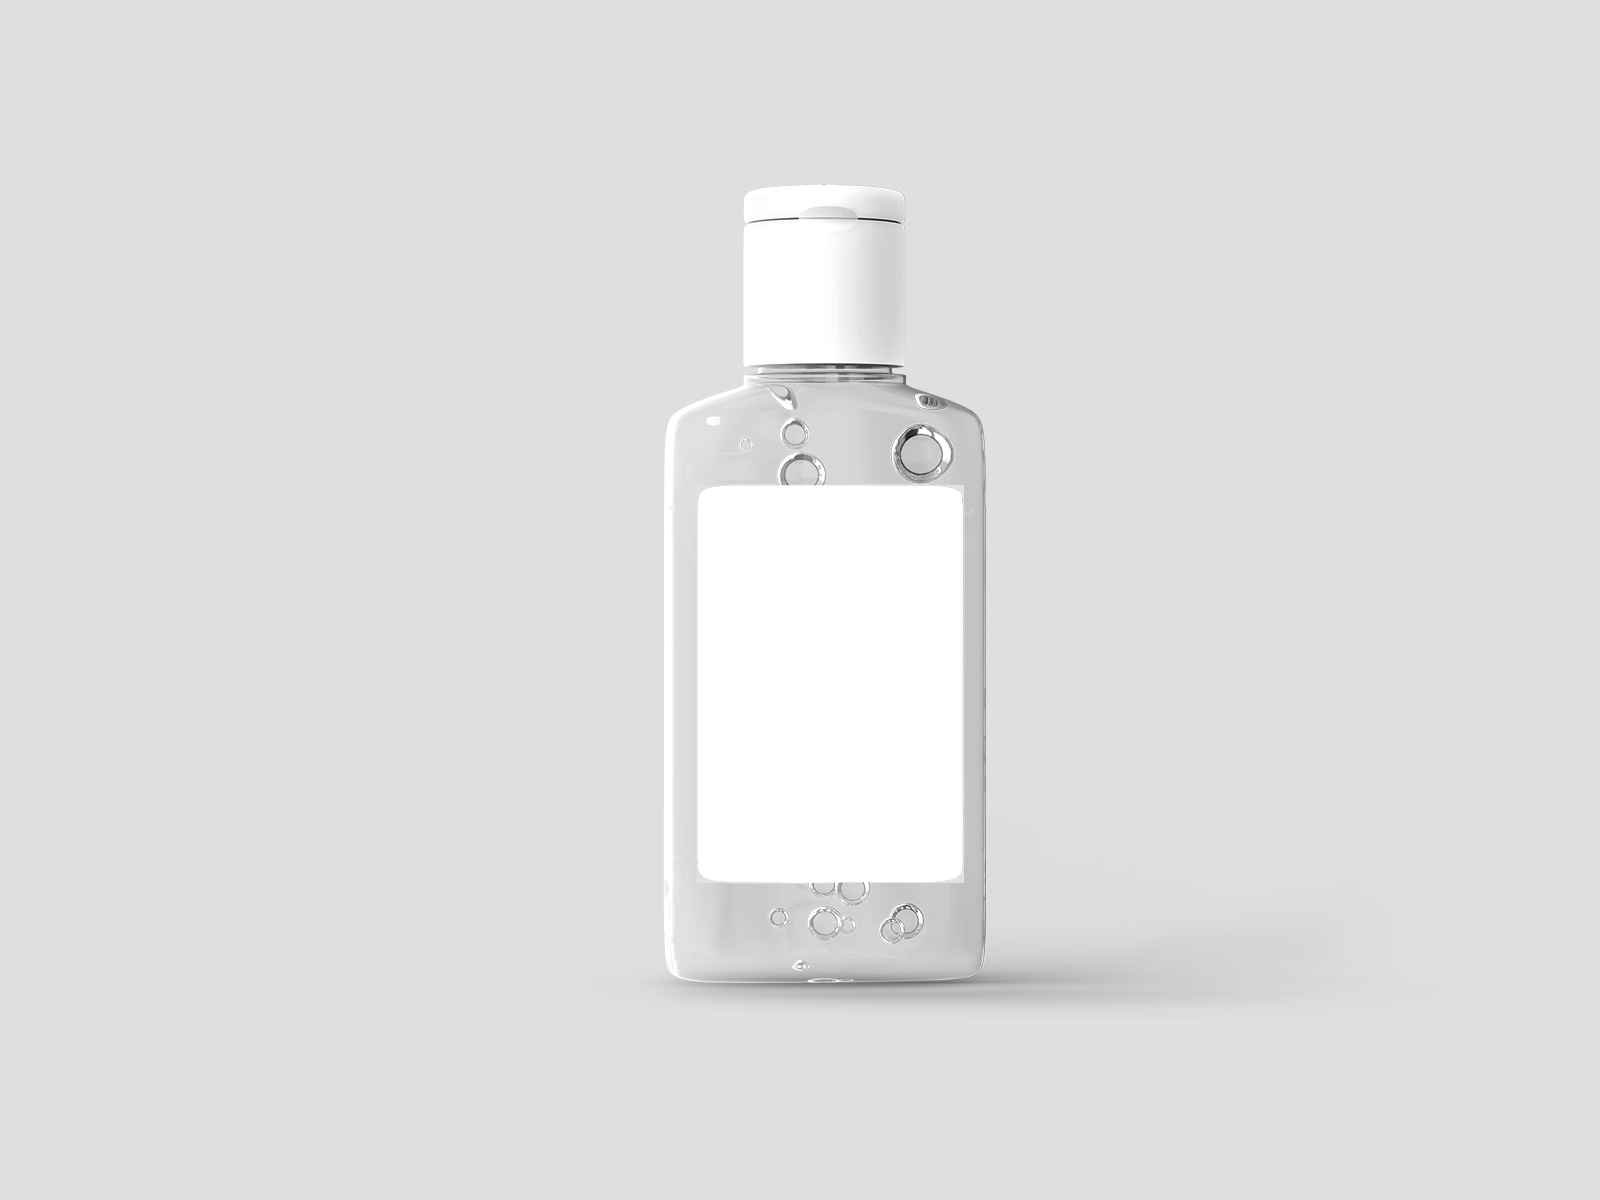 Download Free Hand Sanitizer Gel Bottle Mockup Free Mockups Best Free Psd Mockups Apemockups